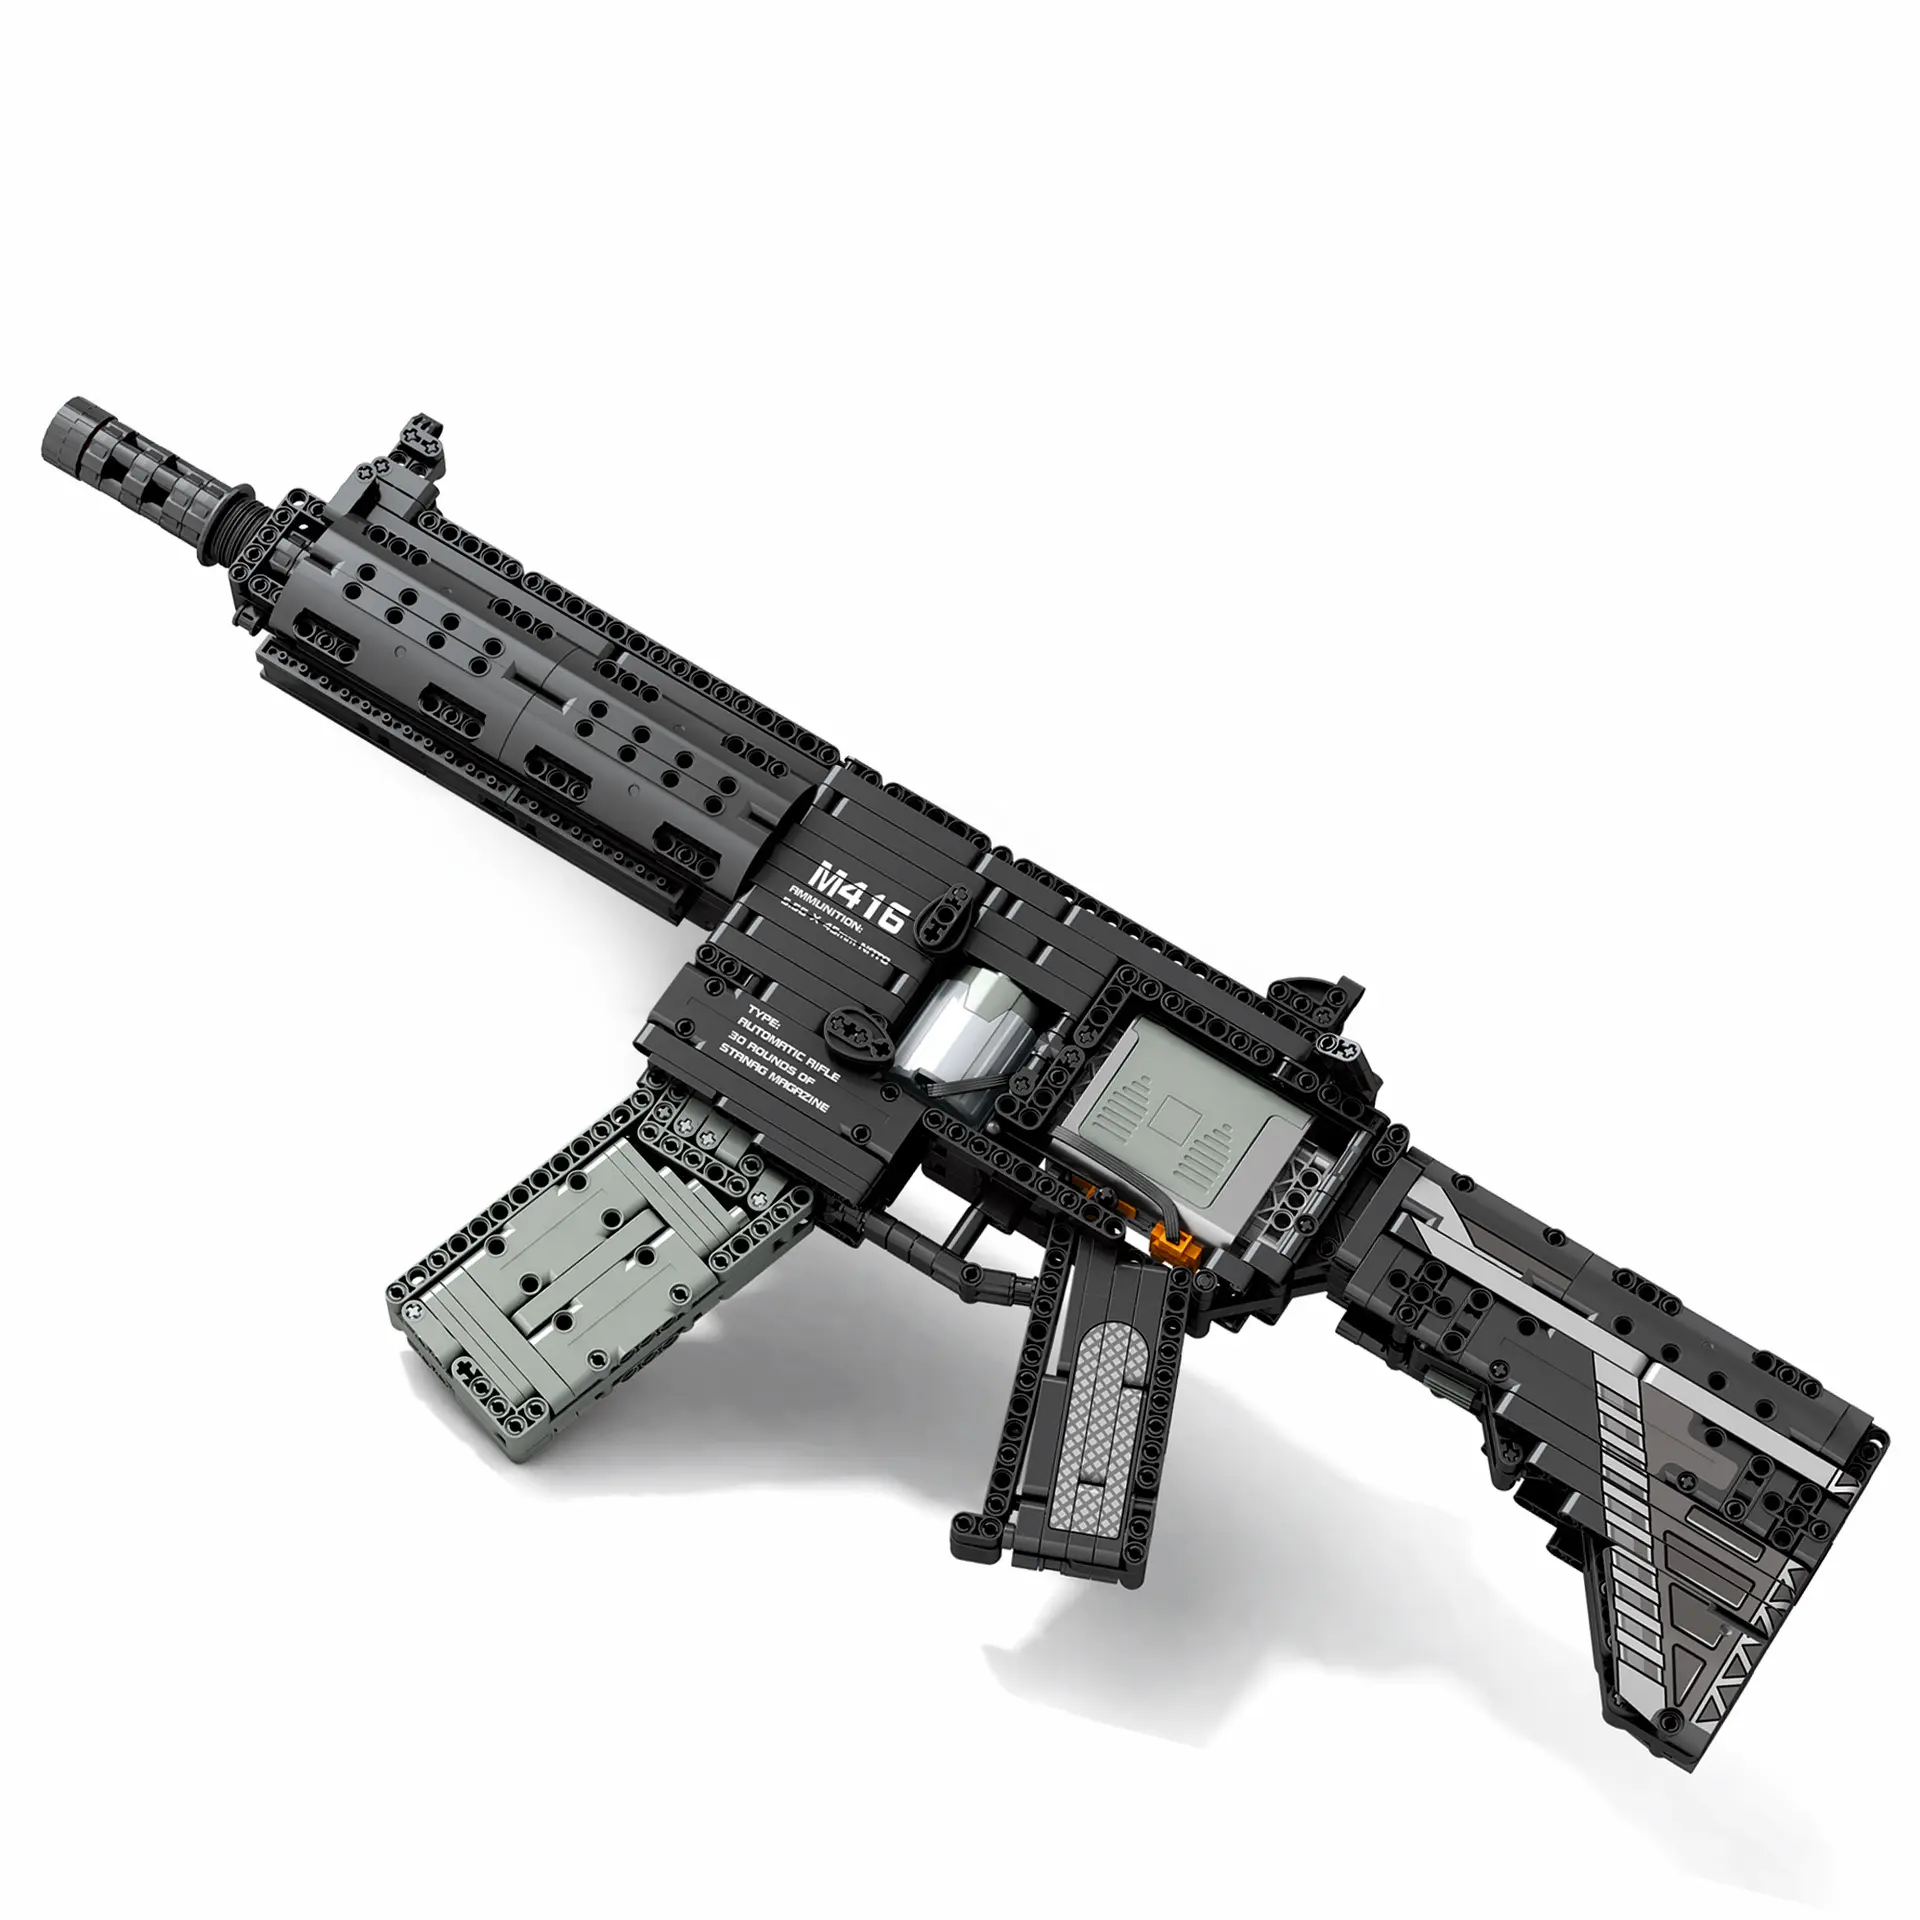 Конструктор Reobrix 77004, блочный пистолет, военный игрушечный набор, 2 мировая война, пистолеты, серия Moc, оружие, пистолеты, кирпичи, армейский солдат, игрушки для детей